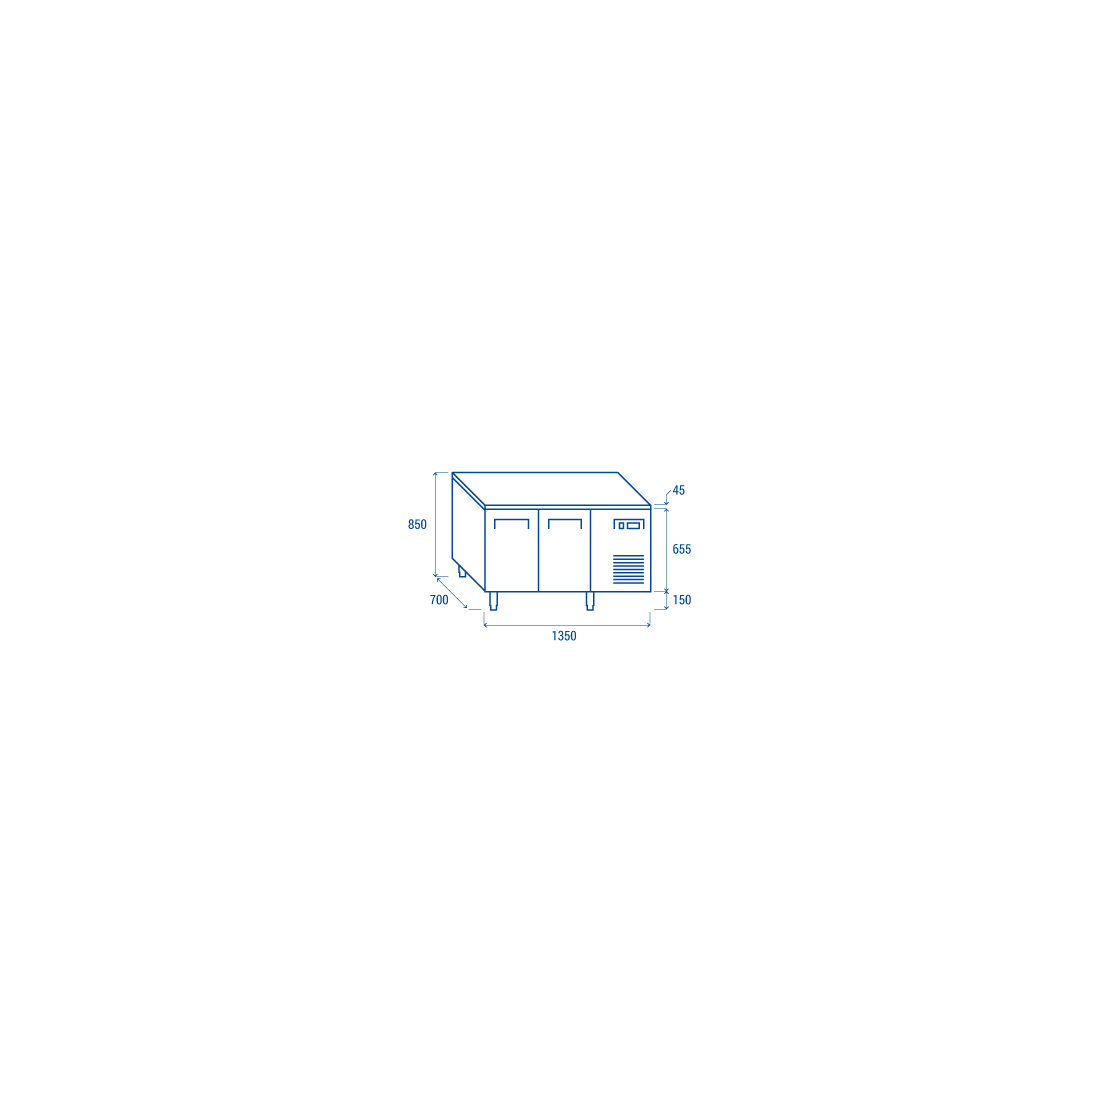 ثلاجة كاونتر بسطح عمل بابين ,QR2100, من كول هيد|mkayn|مكاين